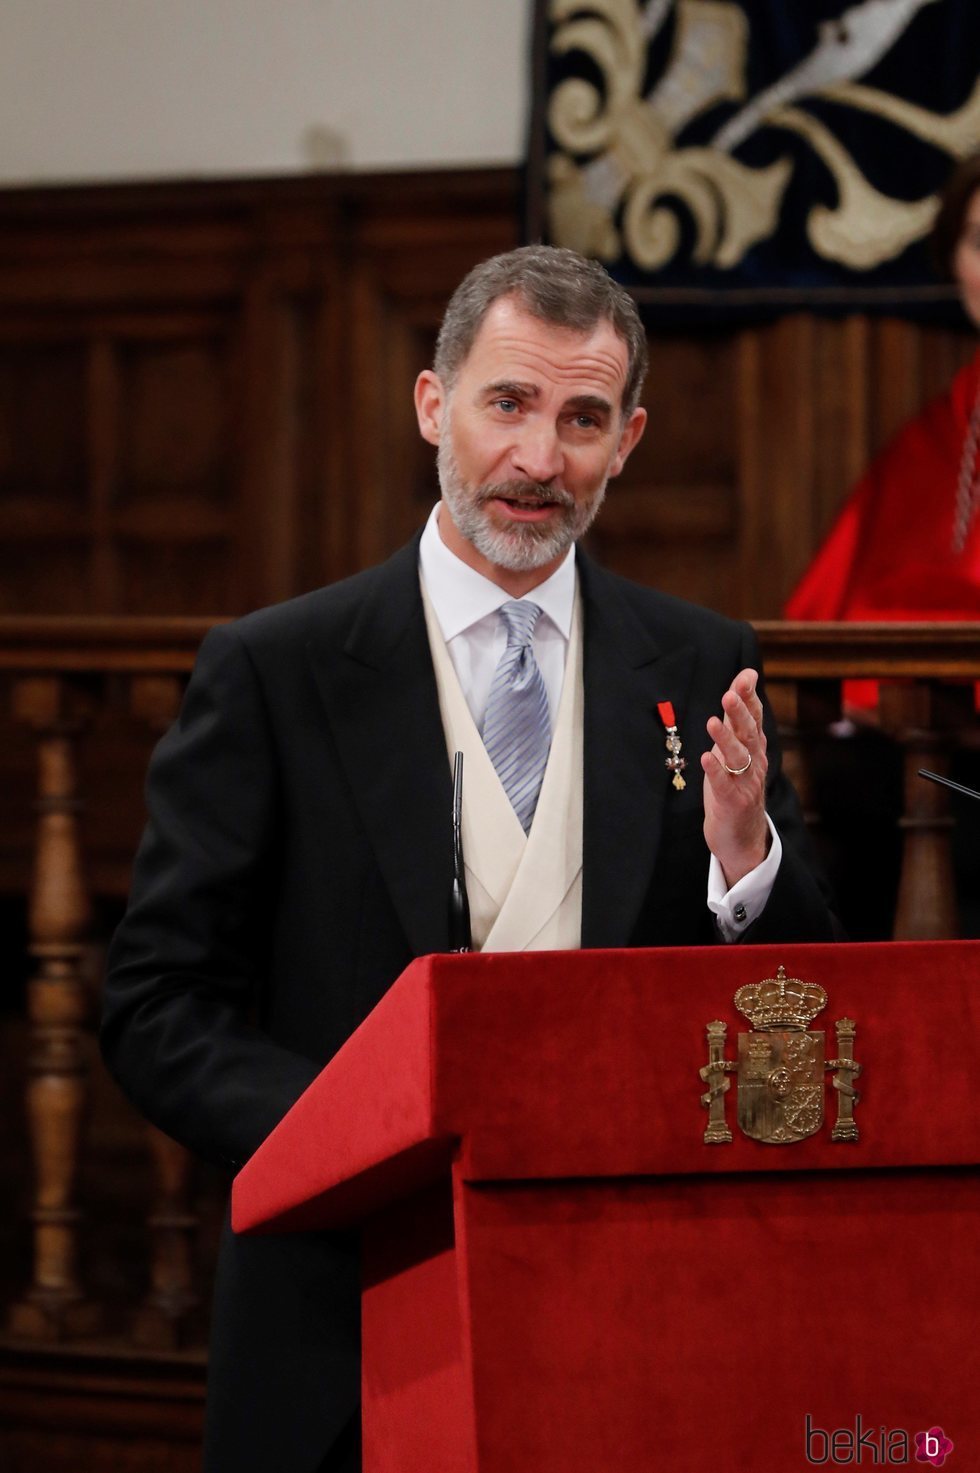 El Rey Felipe VI dando un discurso en la ceremonia del Premio Cervantes 2017